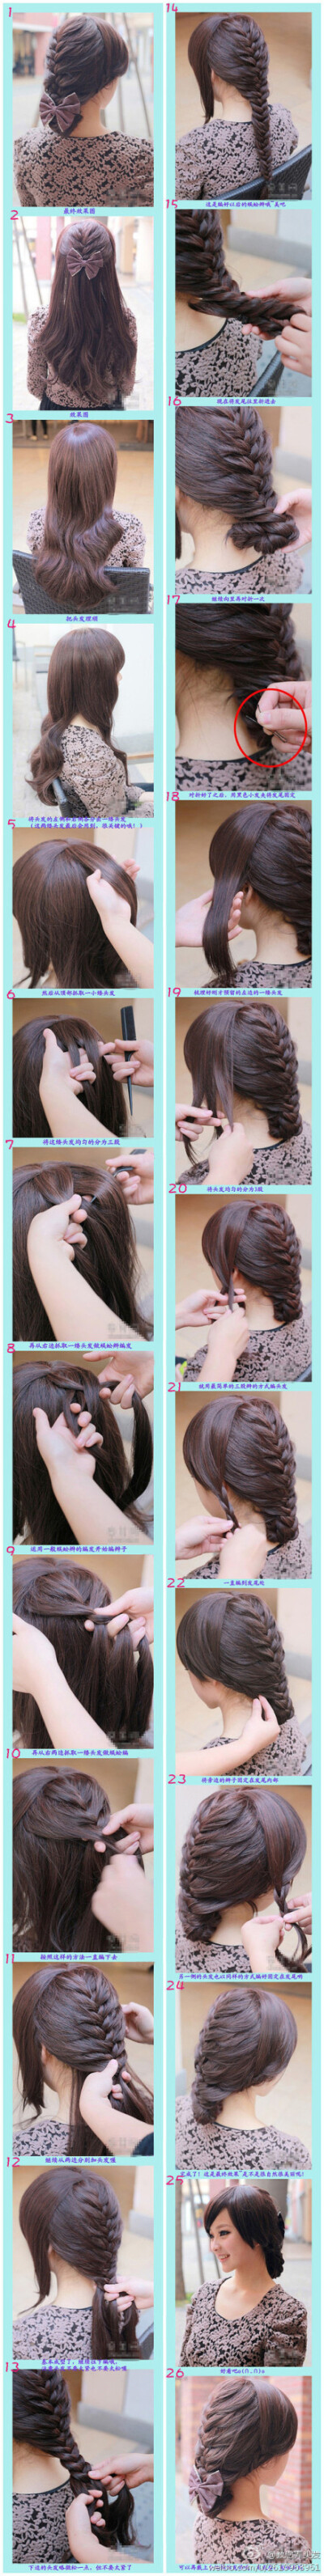 韩式唯美DIY编发盘发教程详解~~加些发饰做点缀就能成为唯美的新娘子发型了